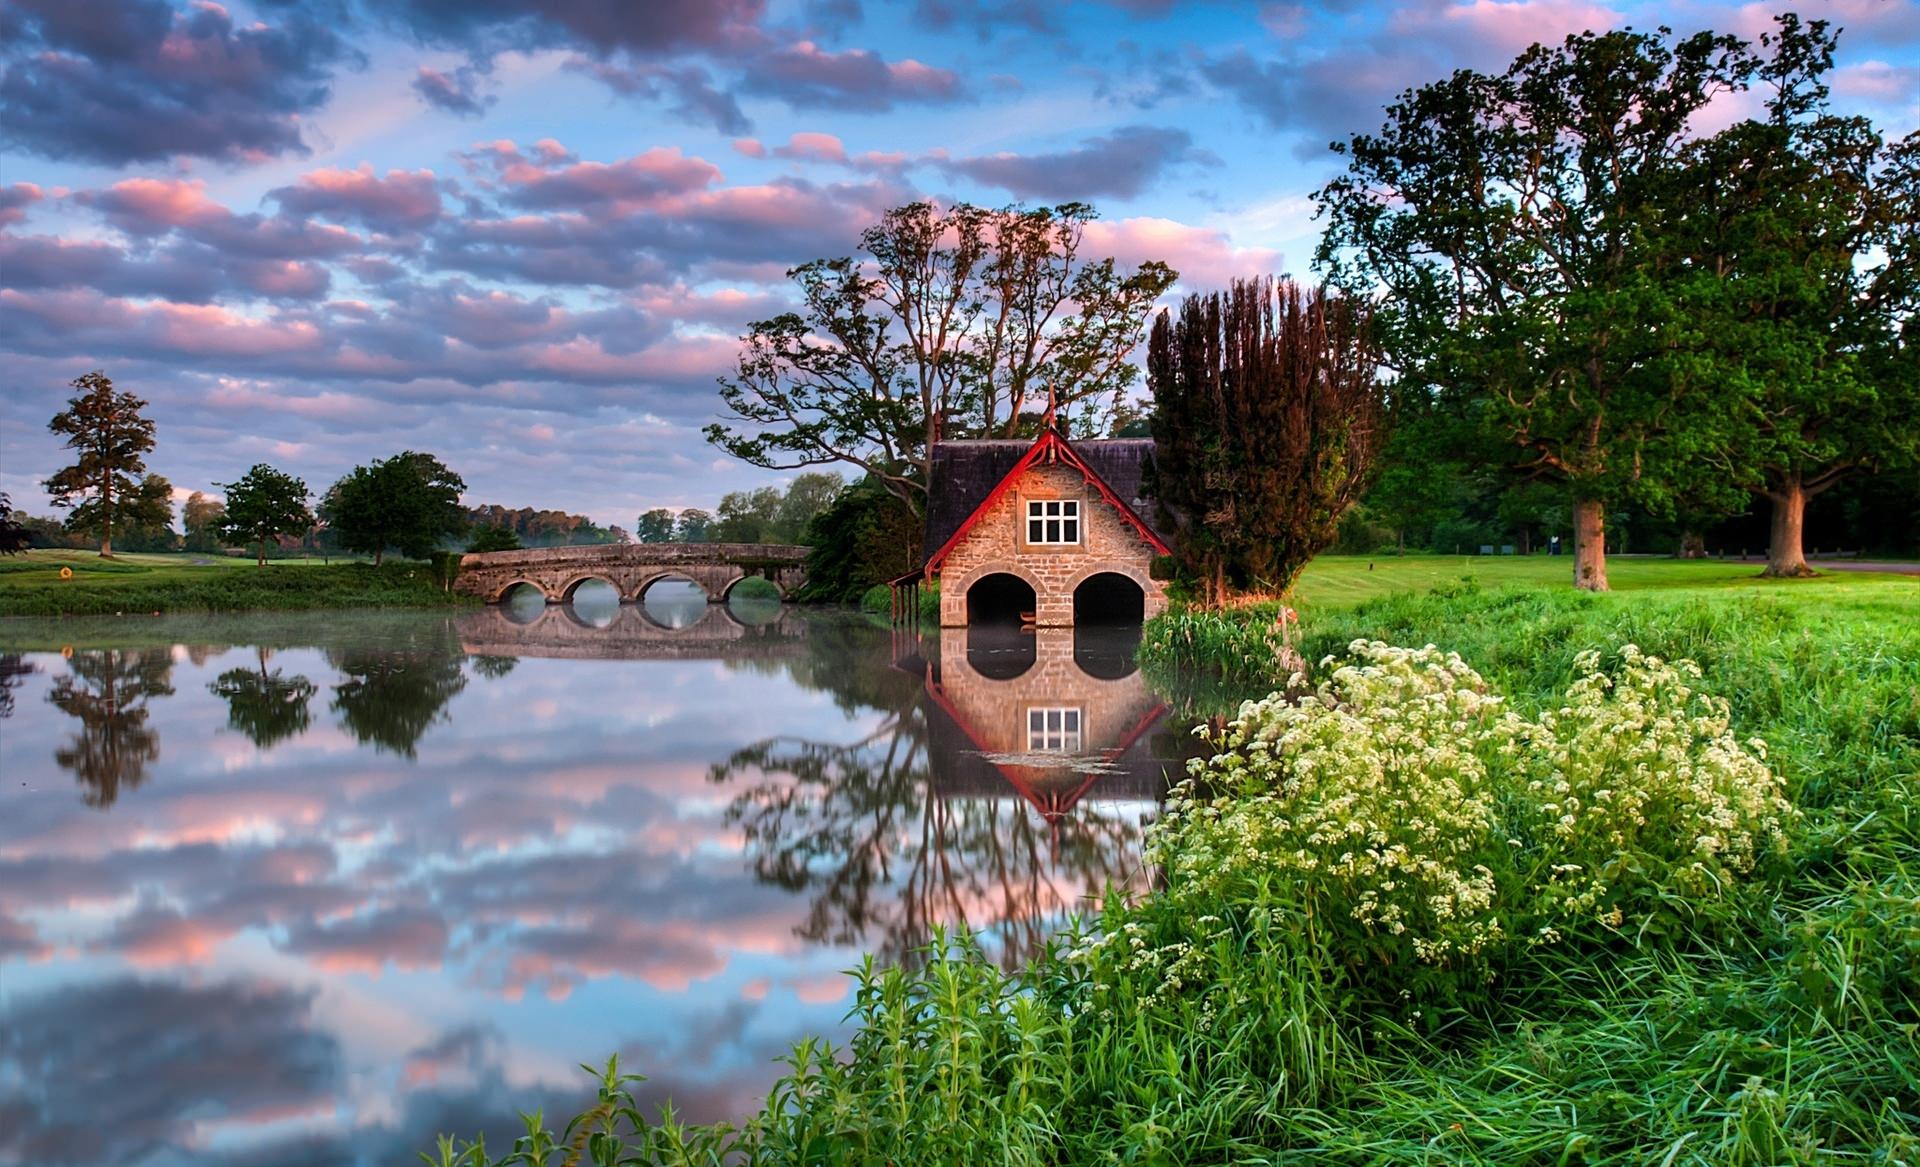 house, man made, boathouse, bridge, flower, lake, reflection, shed, tree